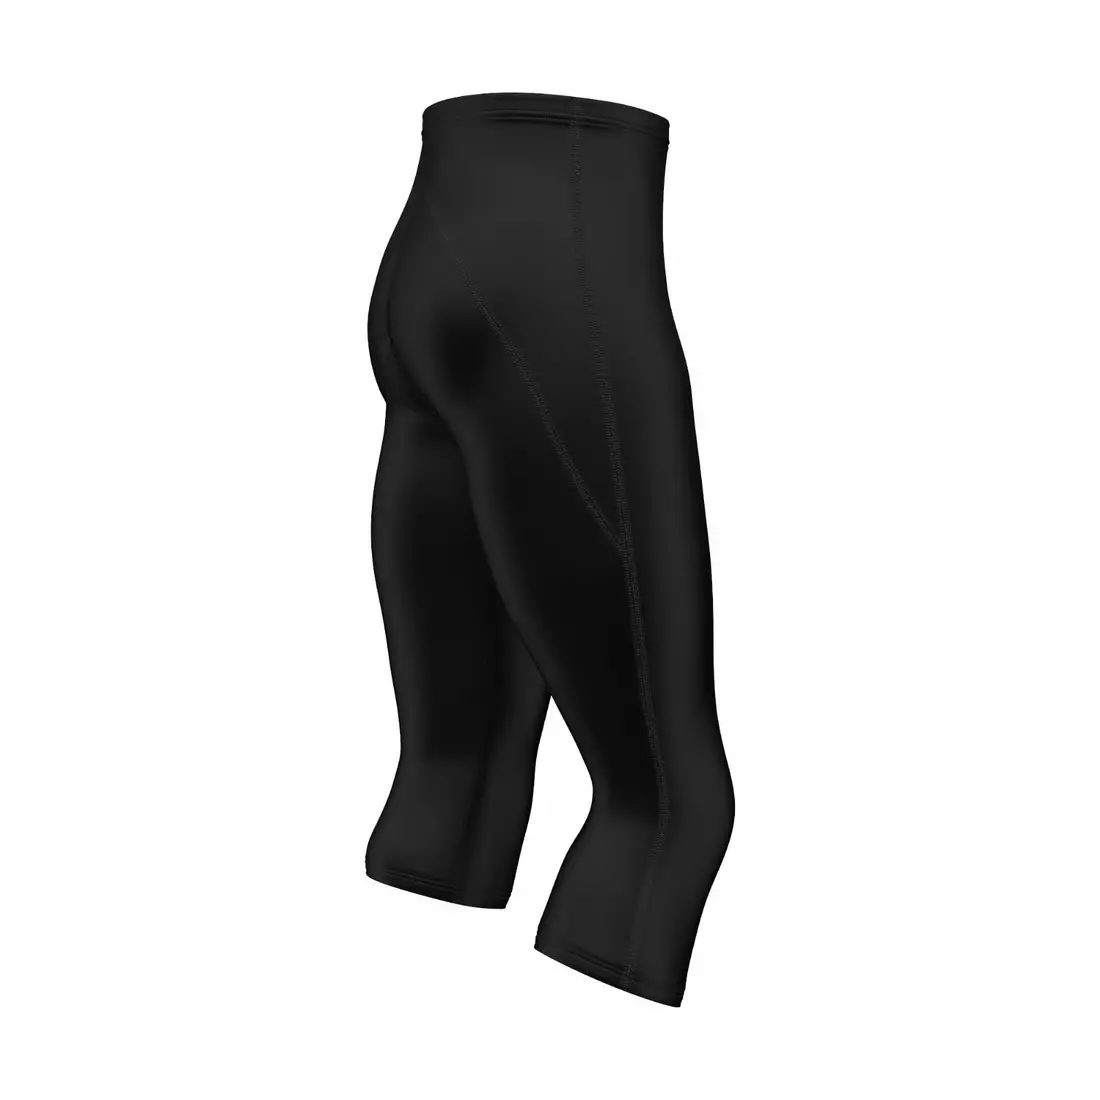 FDX 1600 men's cycling shorts 3/4 black/black stitching